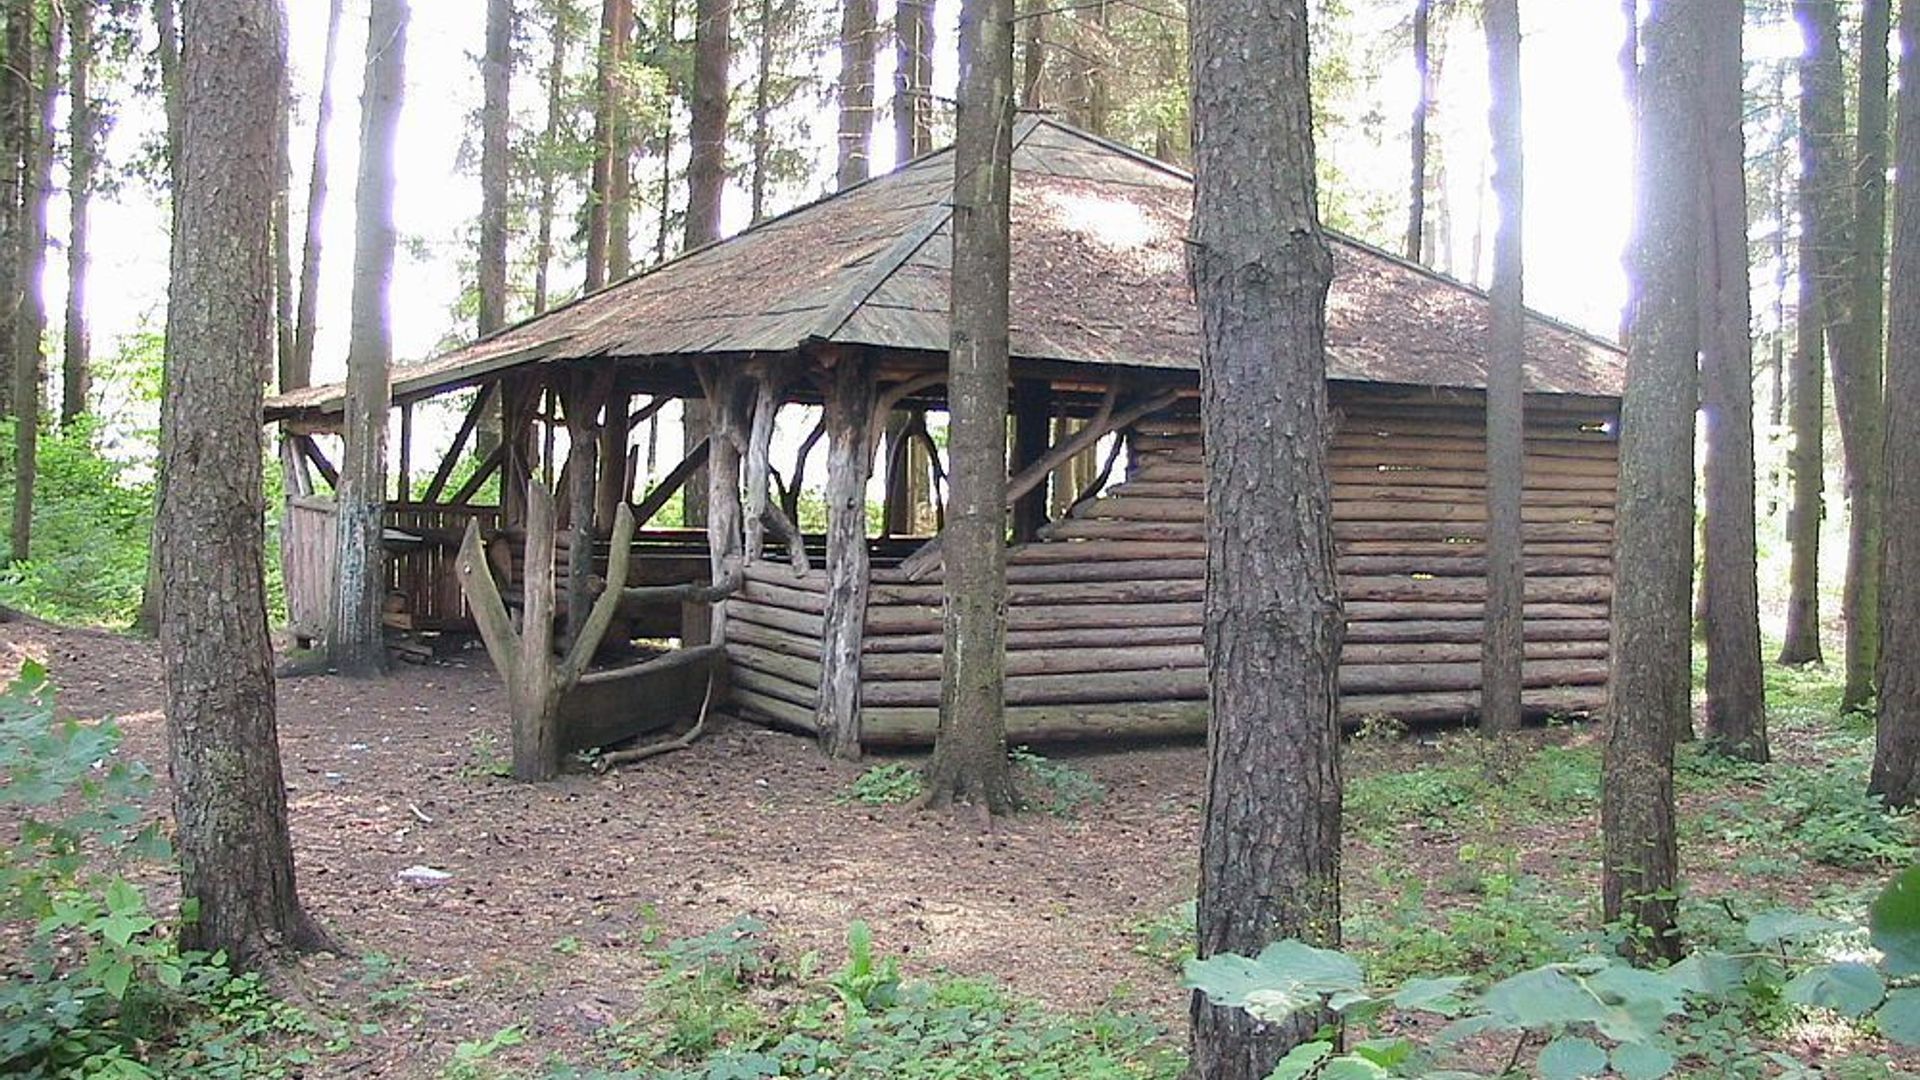 Prievačka Forest Rest Place